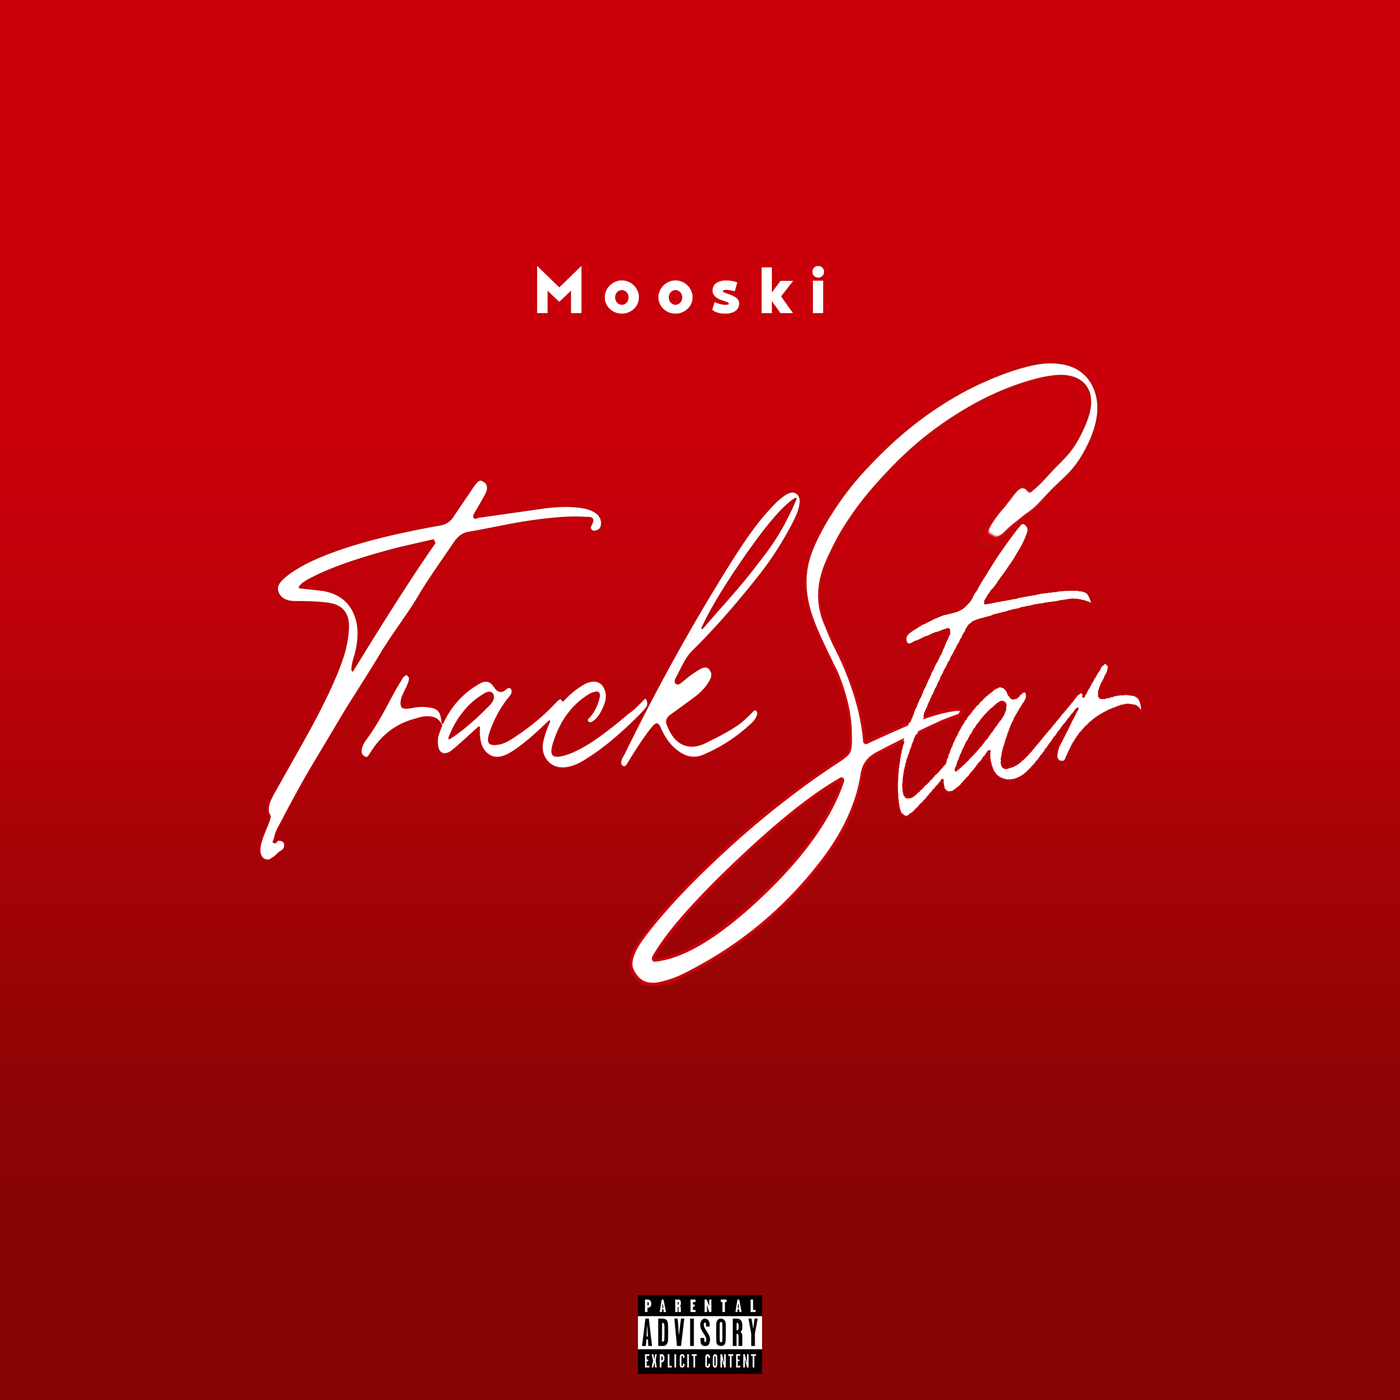 Κατεβάστε Mooski - Track Star